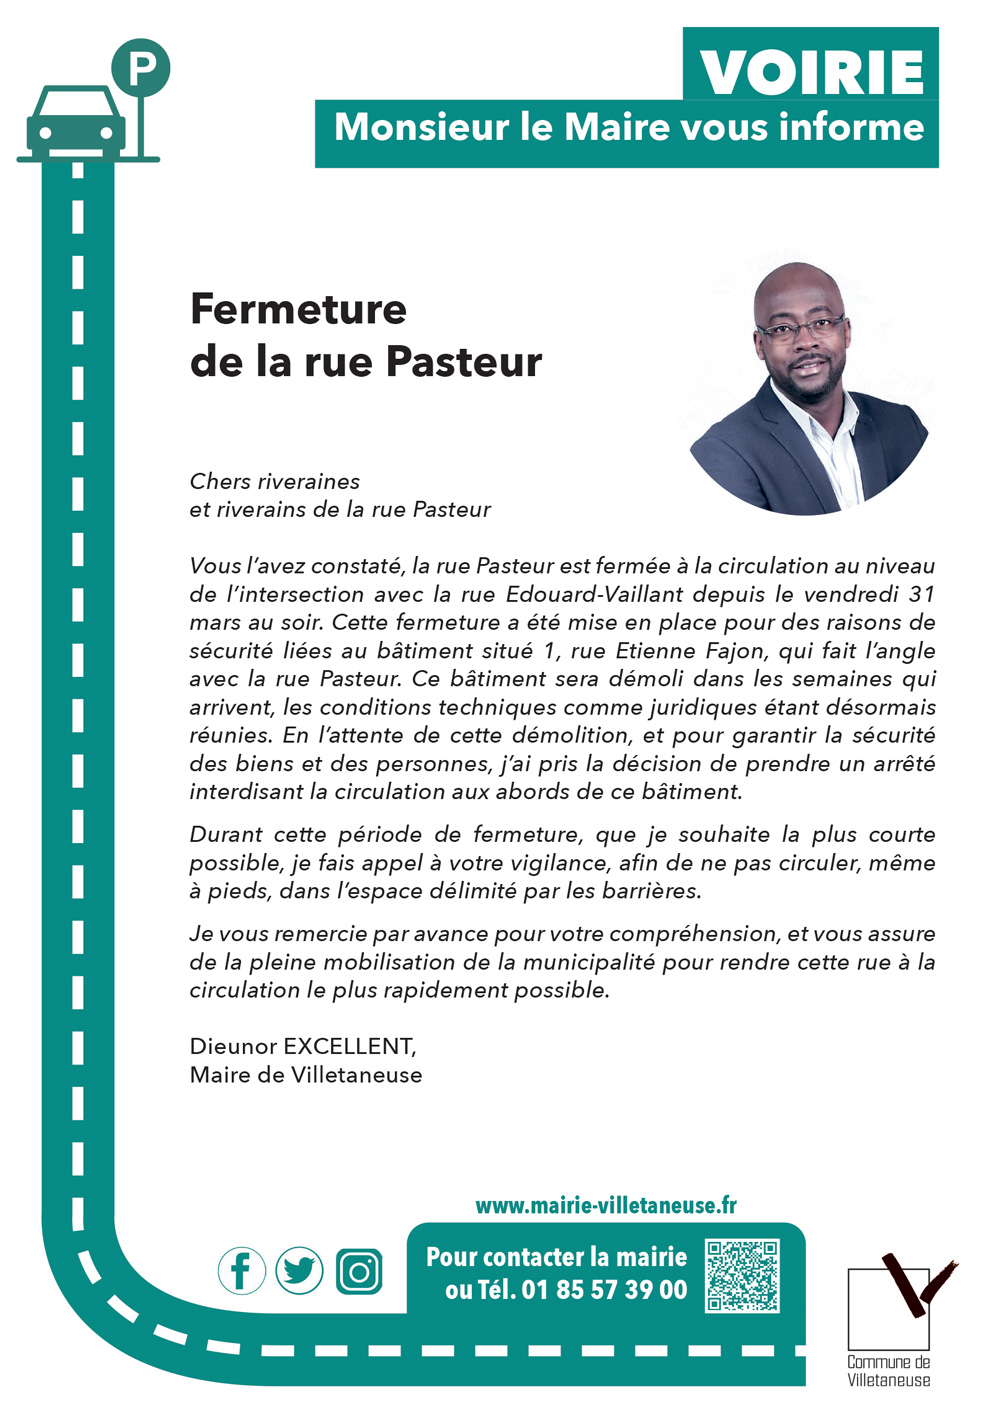 VOIRIE | Fermeture de la rue Pasteur | M. le Maire vous informe